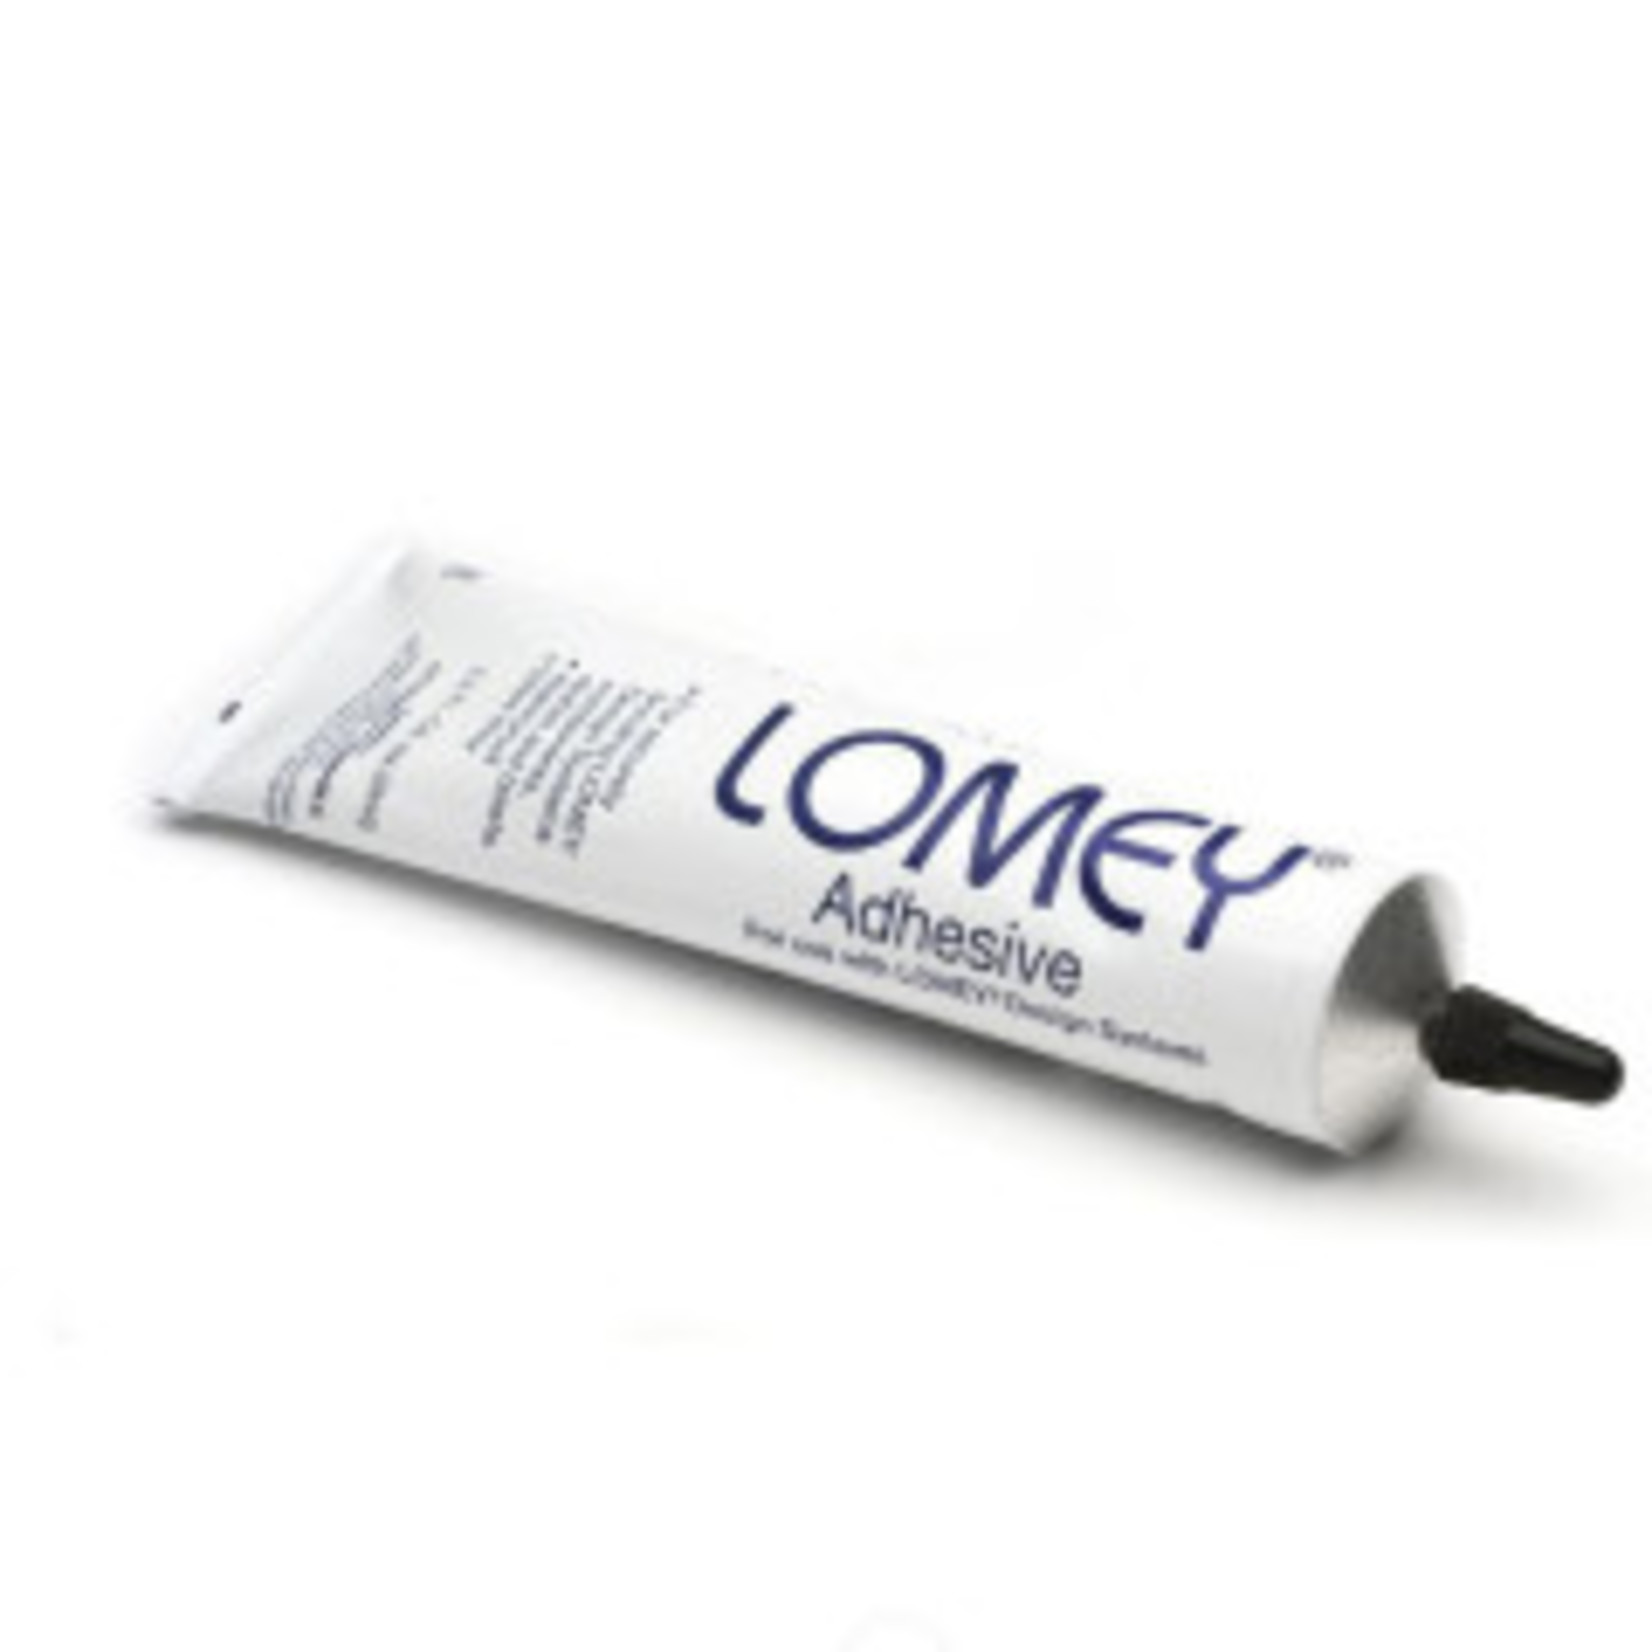 LOMEY Adhesive 3.2 oz. Tube